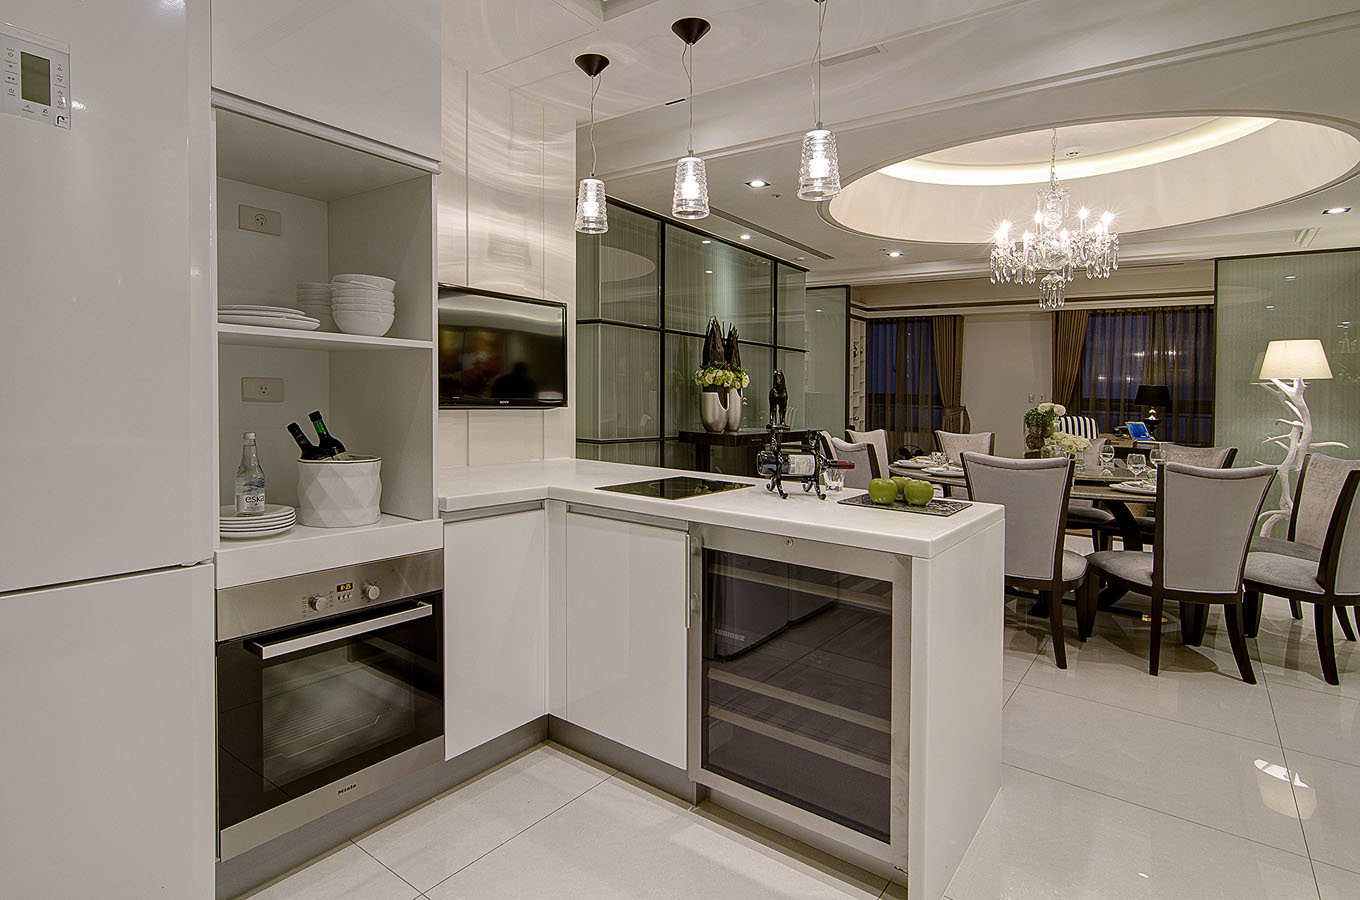 厨房在餐厅一侧，白色橱柜干净明朗，家电的注入提升了空间的层次感。